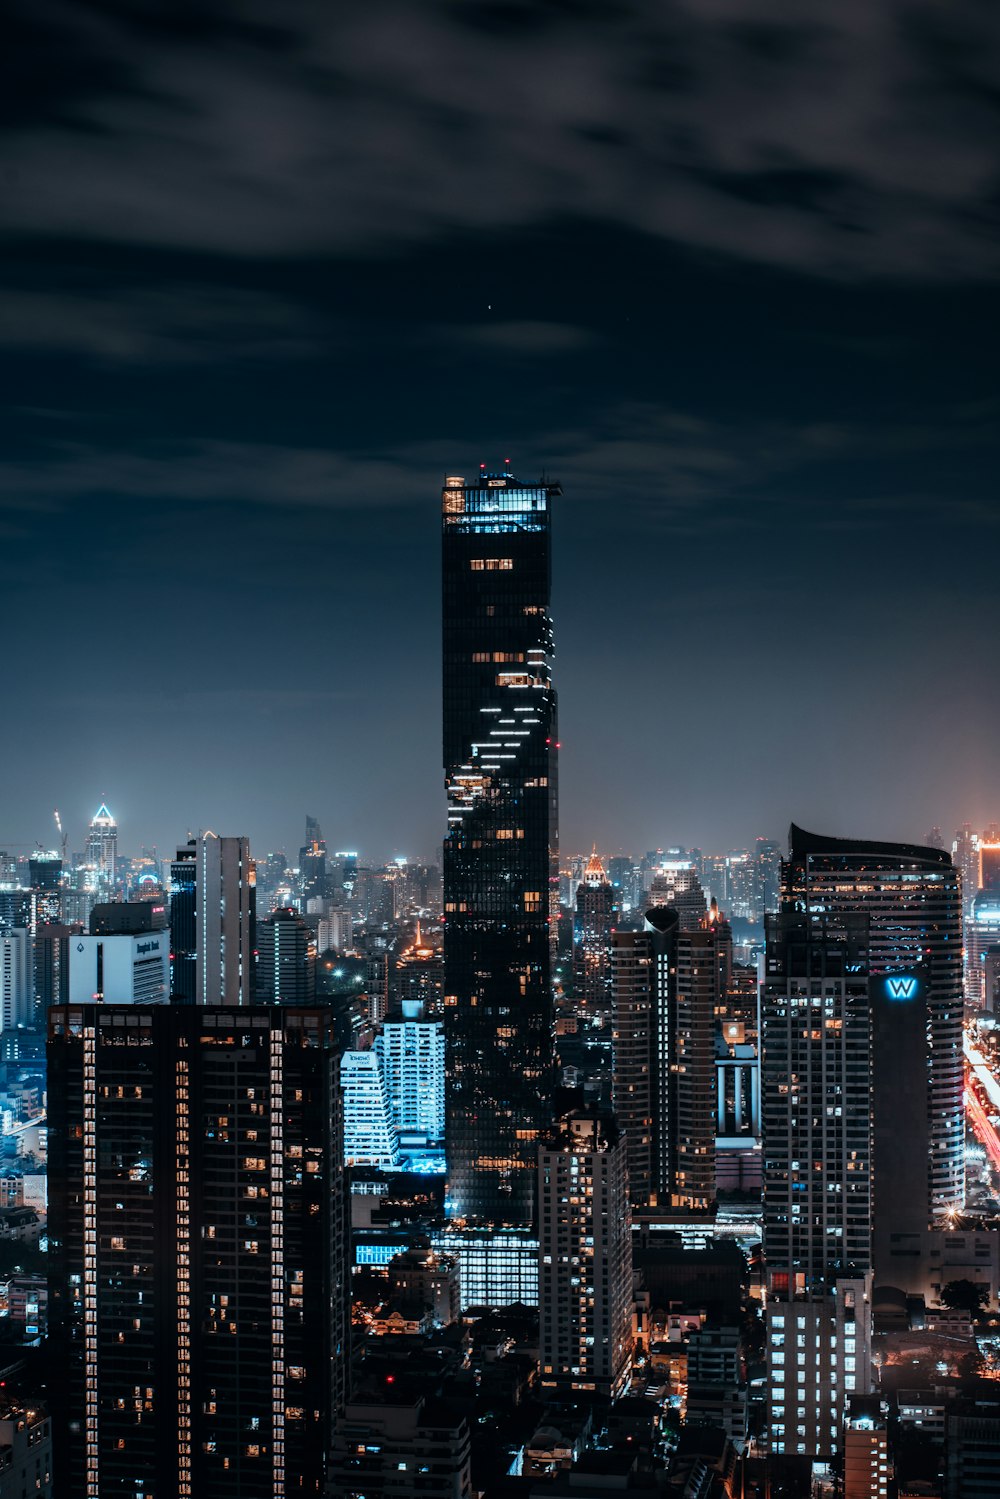 Une ville la nuit avec beaucoup de grands immeubles